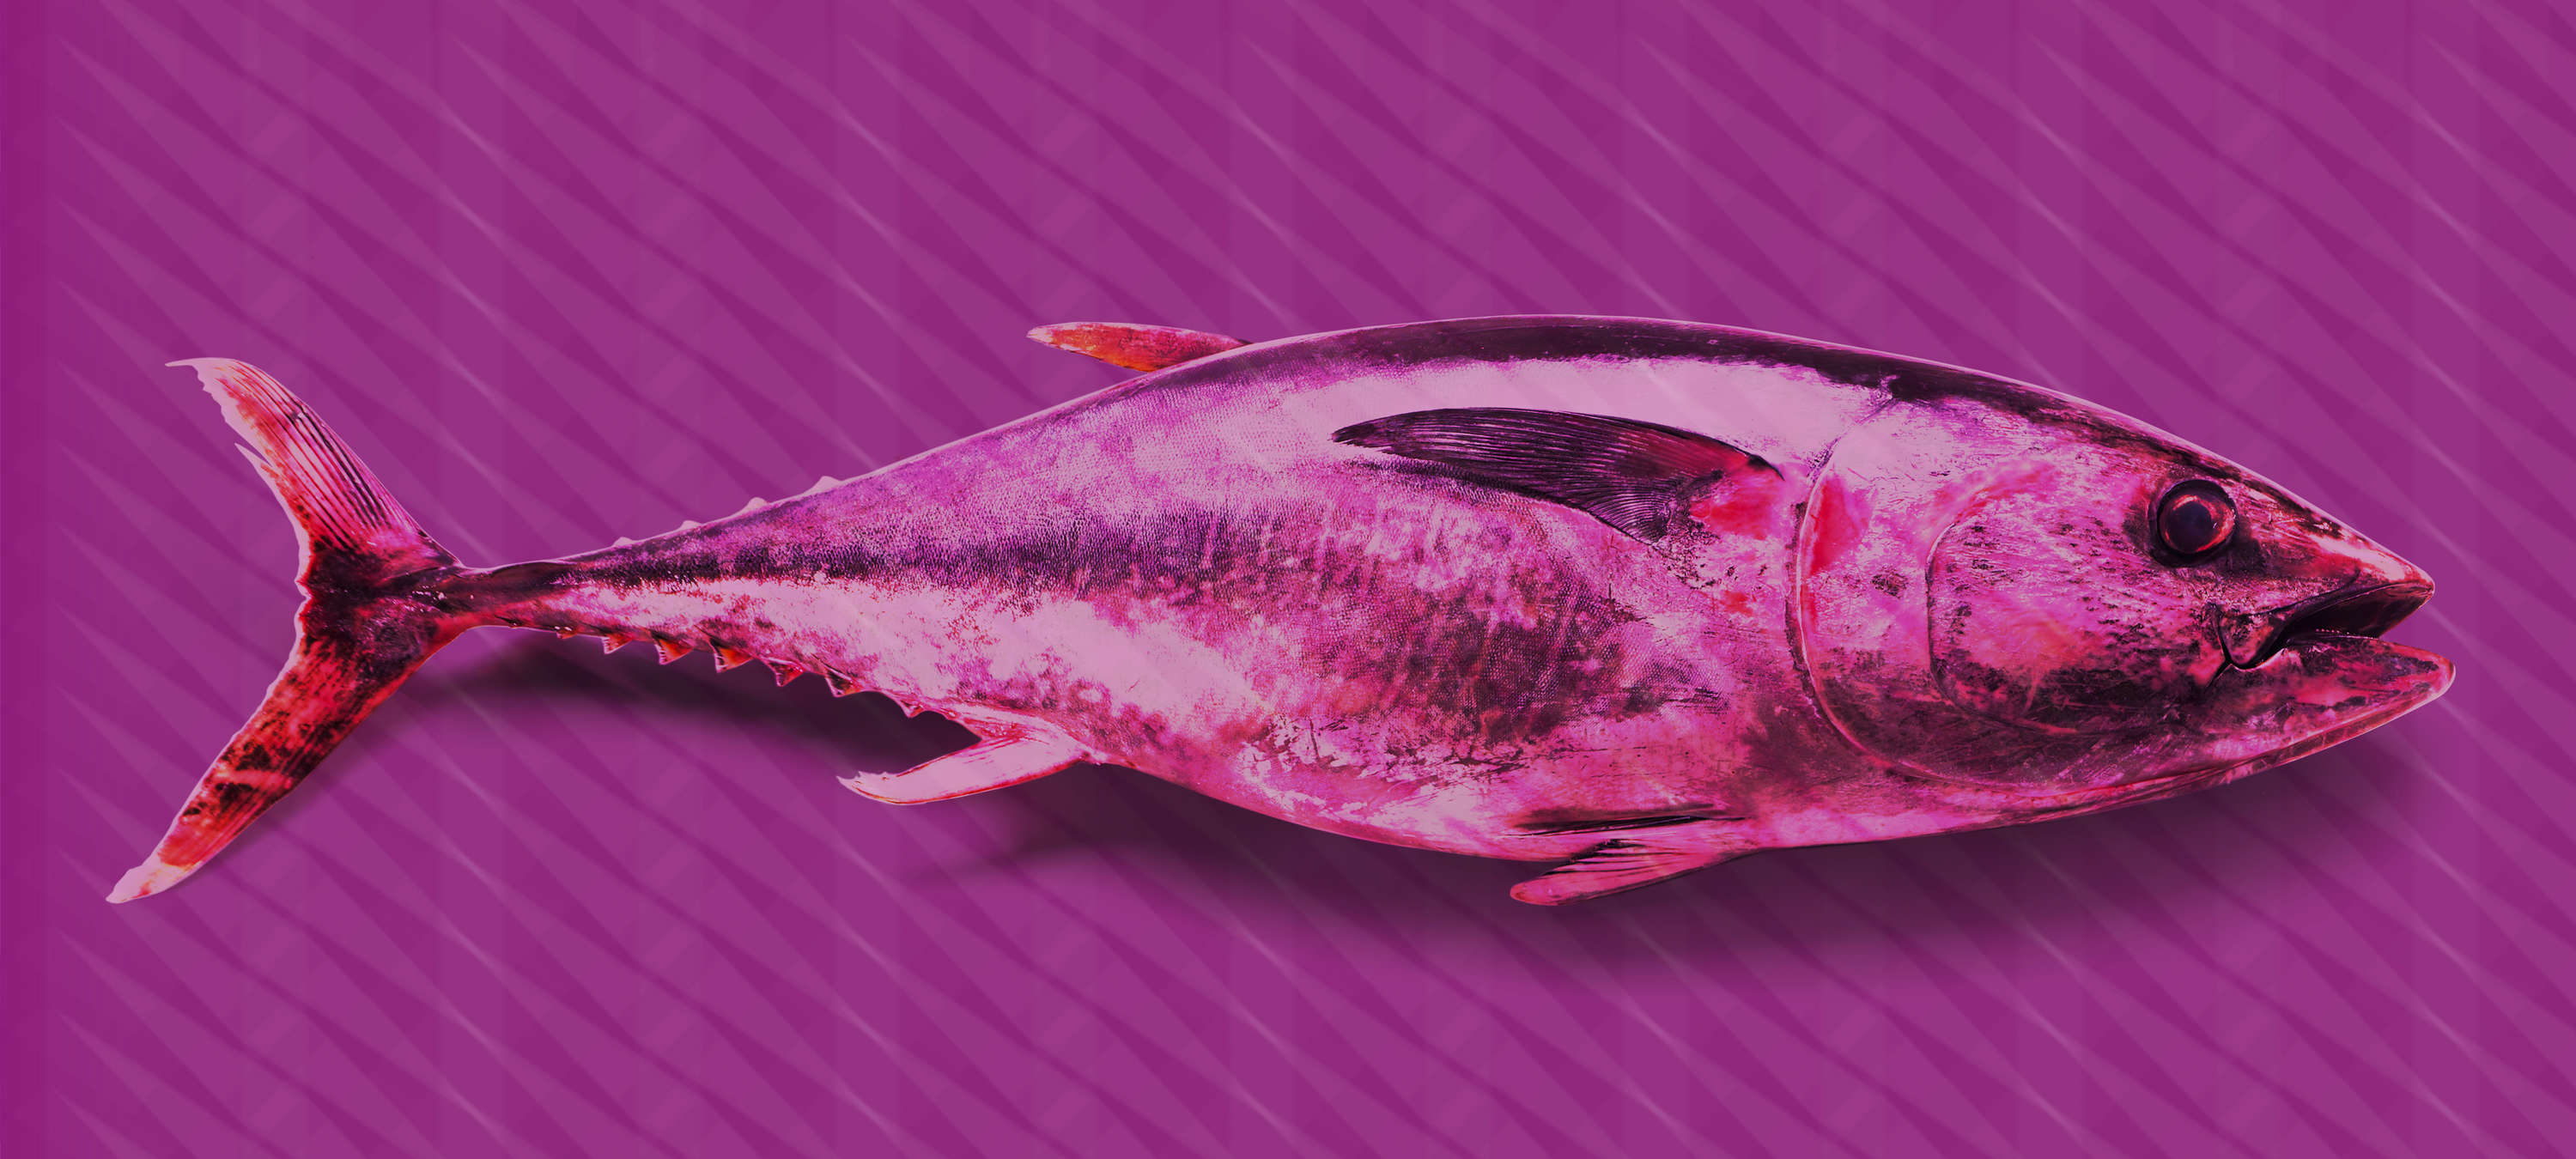             Thunfisch-Fototapete im Pop Art Stil – Violett, Rosa, Rot
        